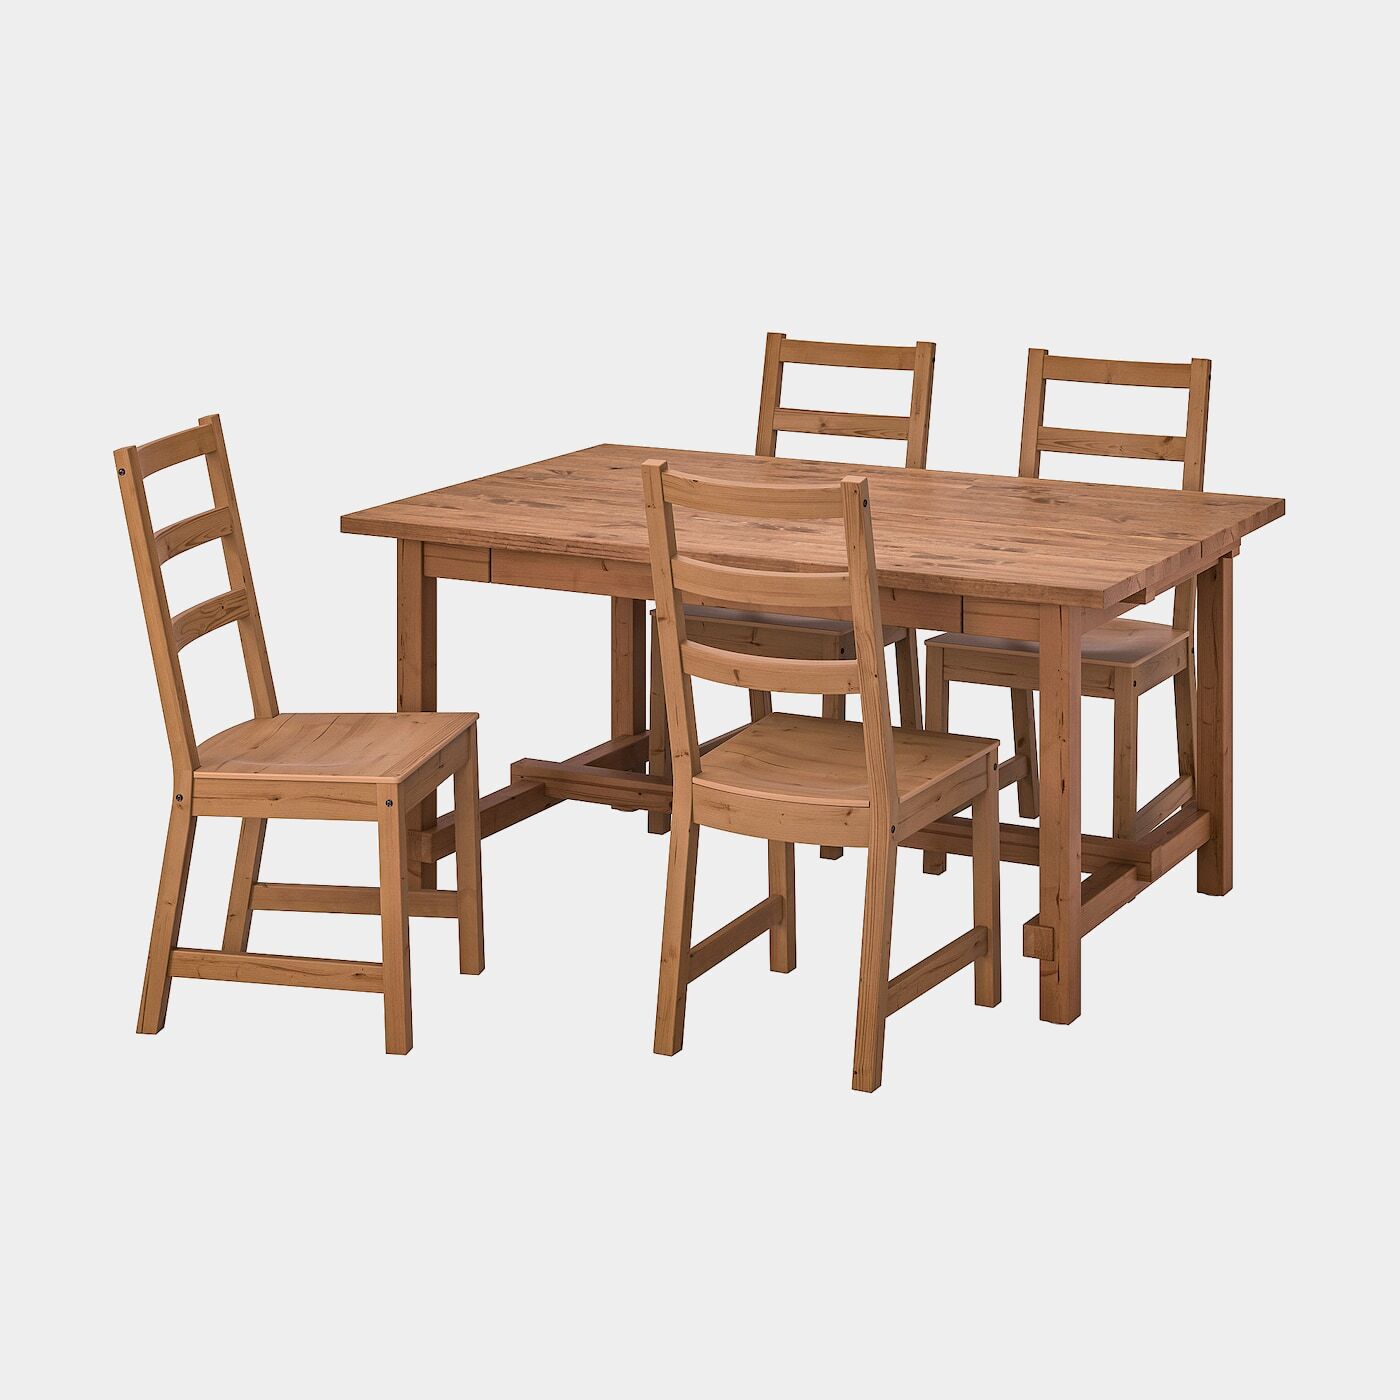 NORDVIKEN / NORDVIKEN Tisch und 4 Stühle  -  - Möbel Ideen für dein Zuhause von Home Trends. Möbel Trends von Social Media Influencer für dein Skandi Zuhause.